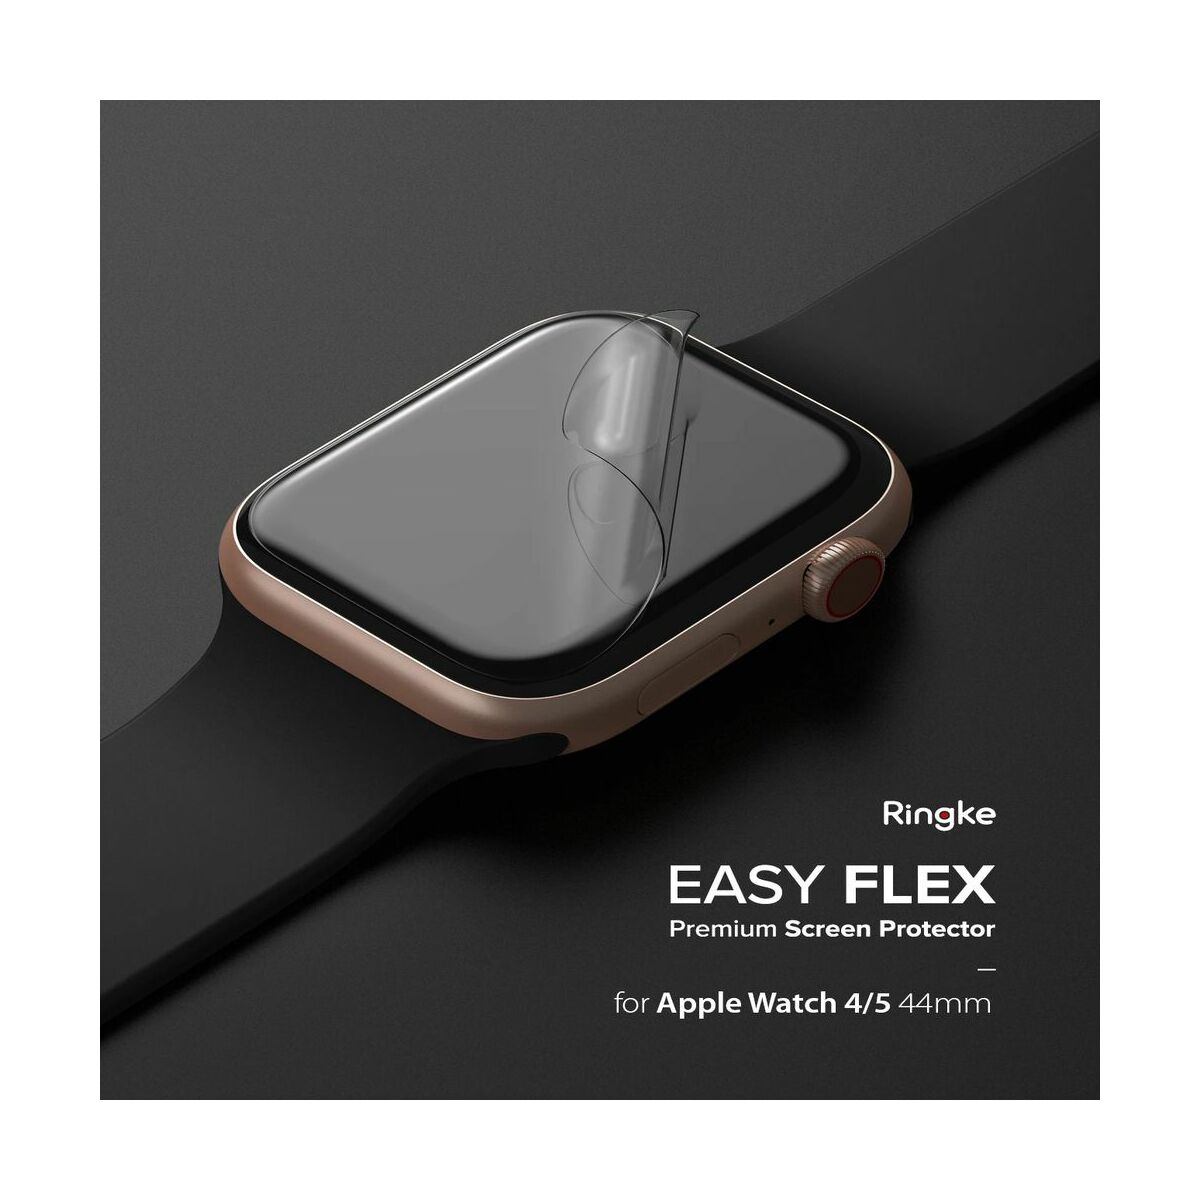 Kép 3/13 - Ringke Apple Watch 4-5 Series kijelzővédő üveg, 44 mm, EASY FLEX (1+2 csoamg), Átlátszó